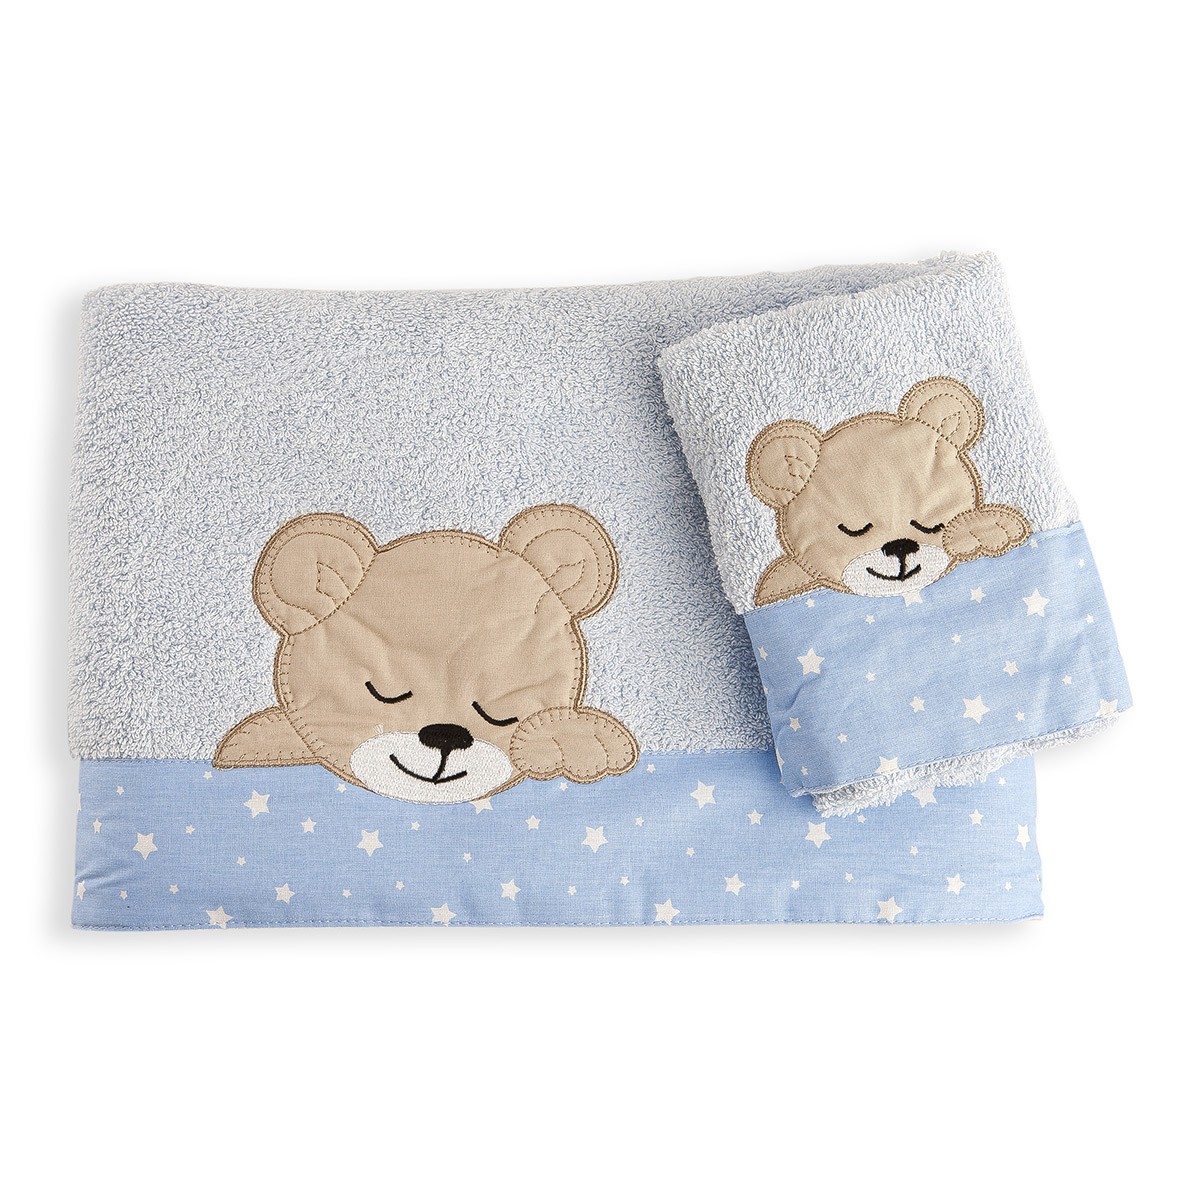 Βρεφικές Πετσέτες (Σετ 2τμχ) Dimcol Sleeping Bear Cub 13